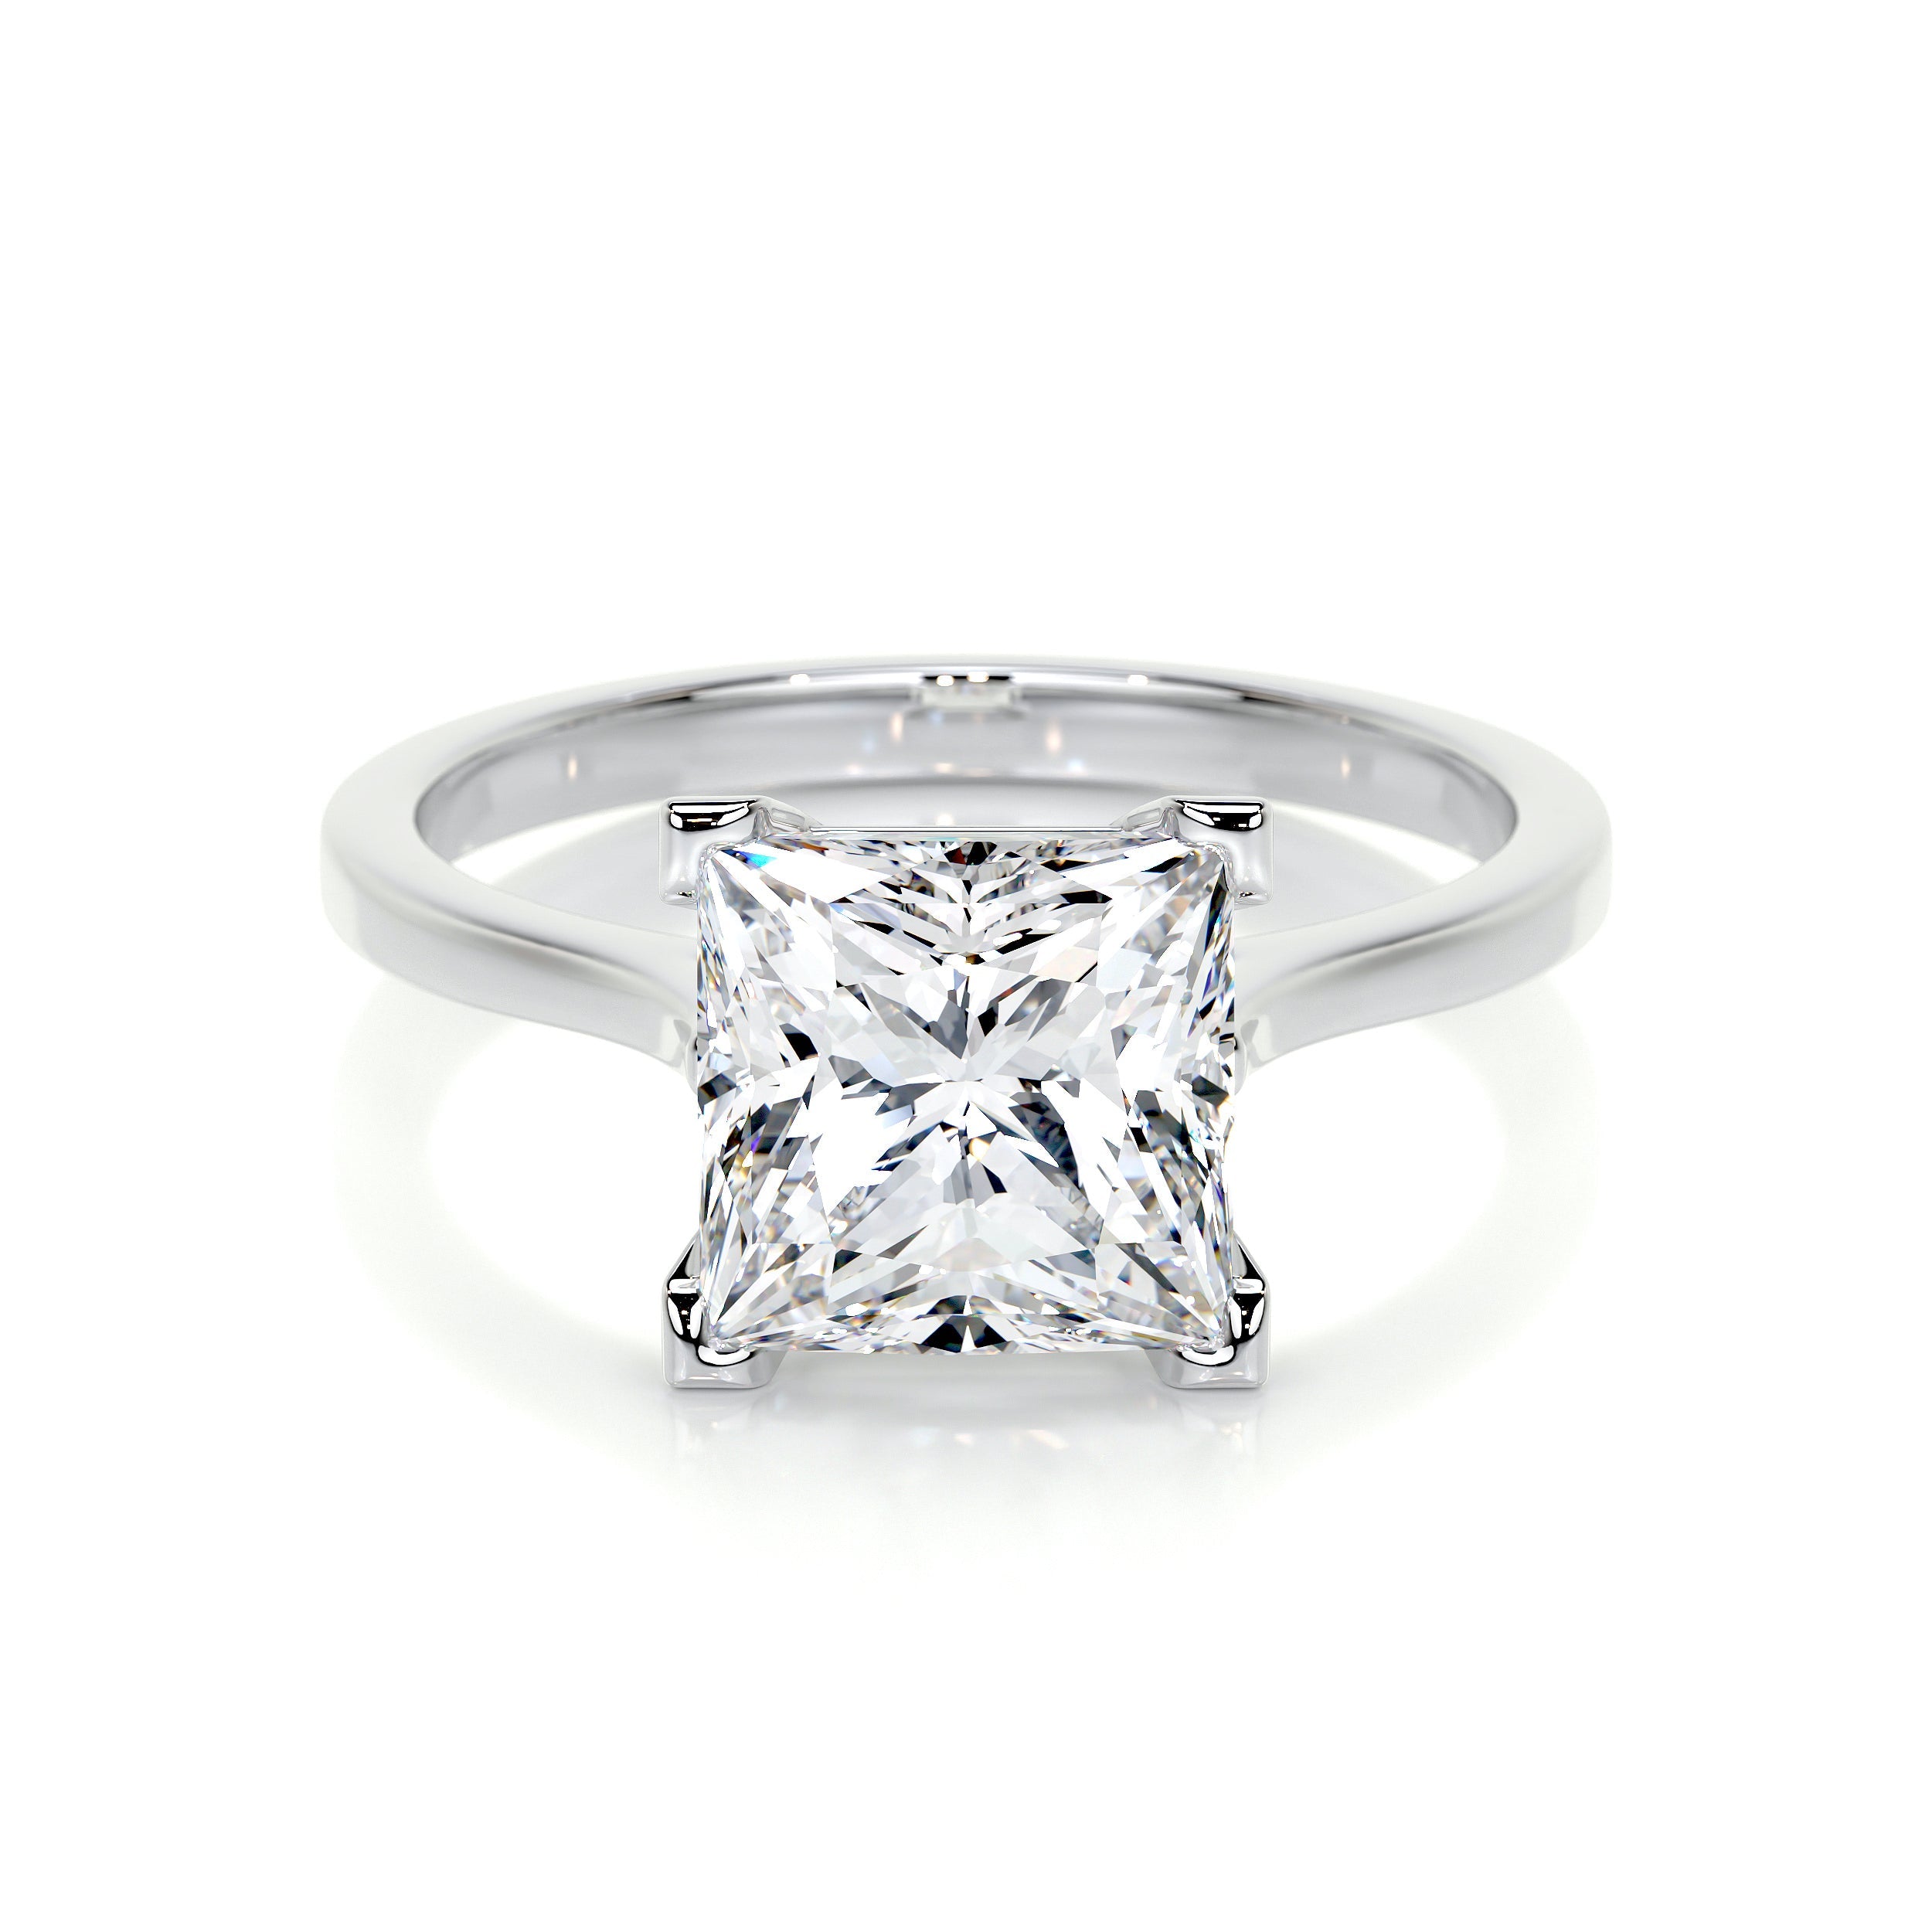 Ella Lab Grown Diamond Ring   (3 Carat) -18K White Gold